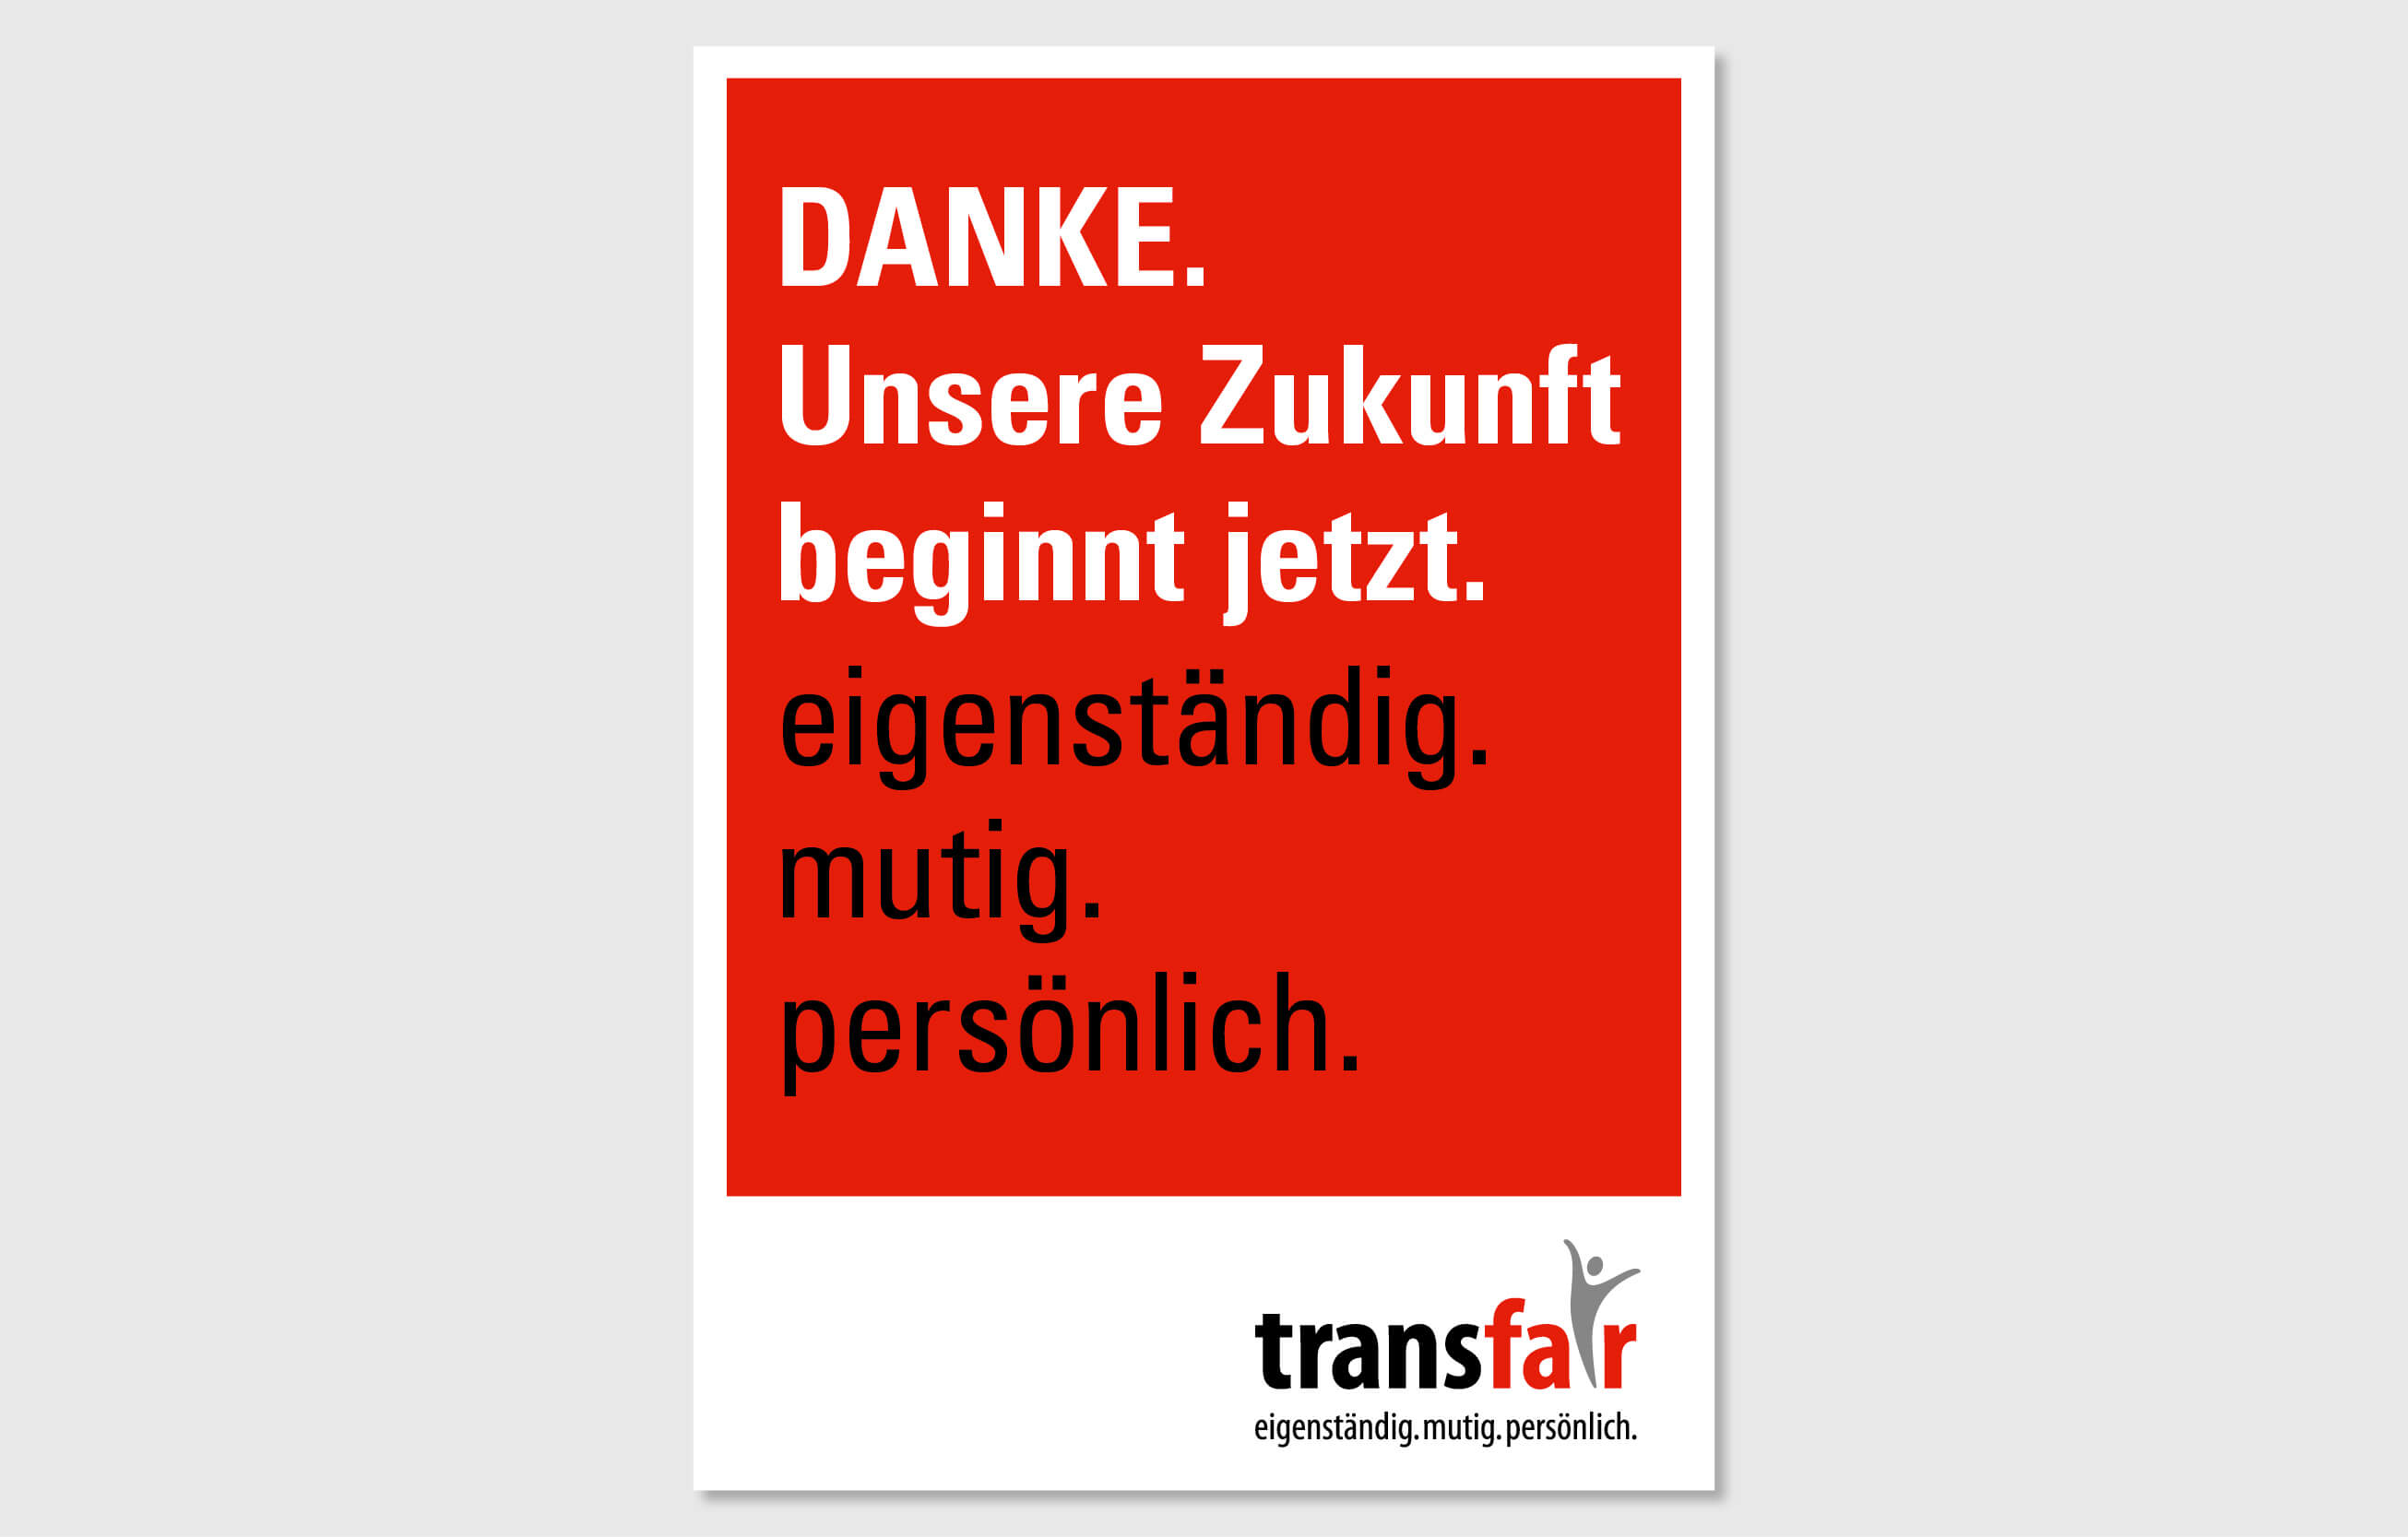 transfair design by consign | Agentur für Branding und Kommunikation